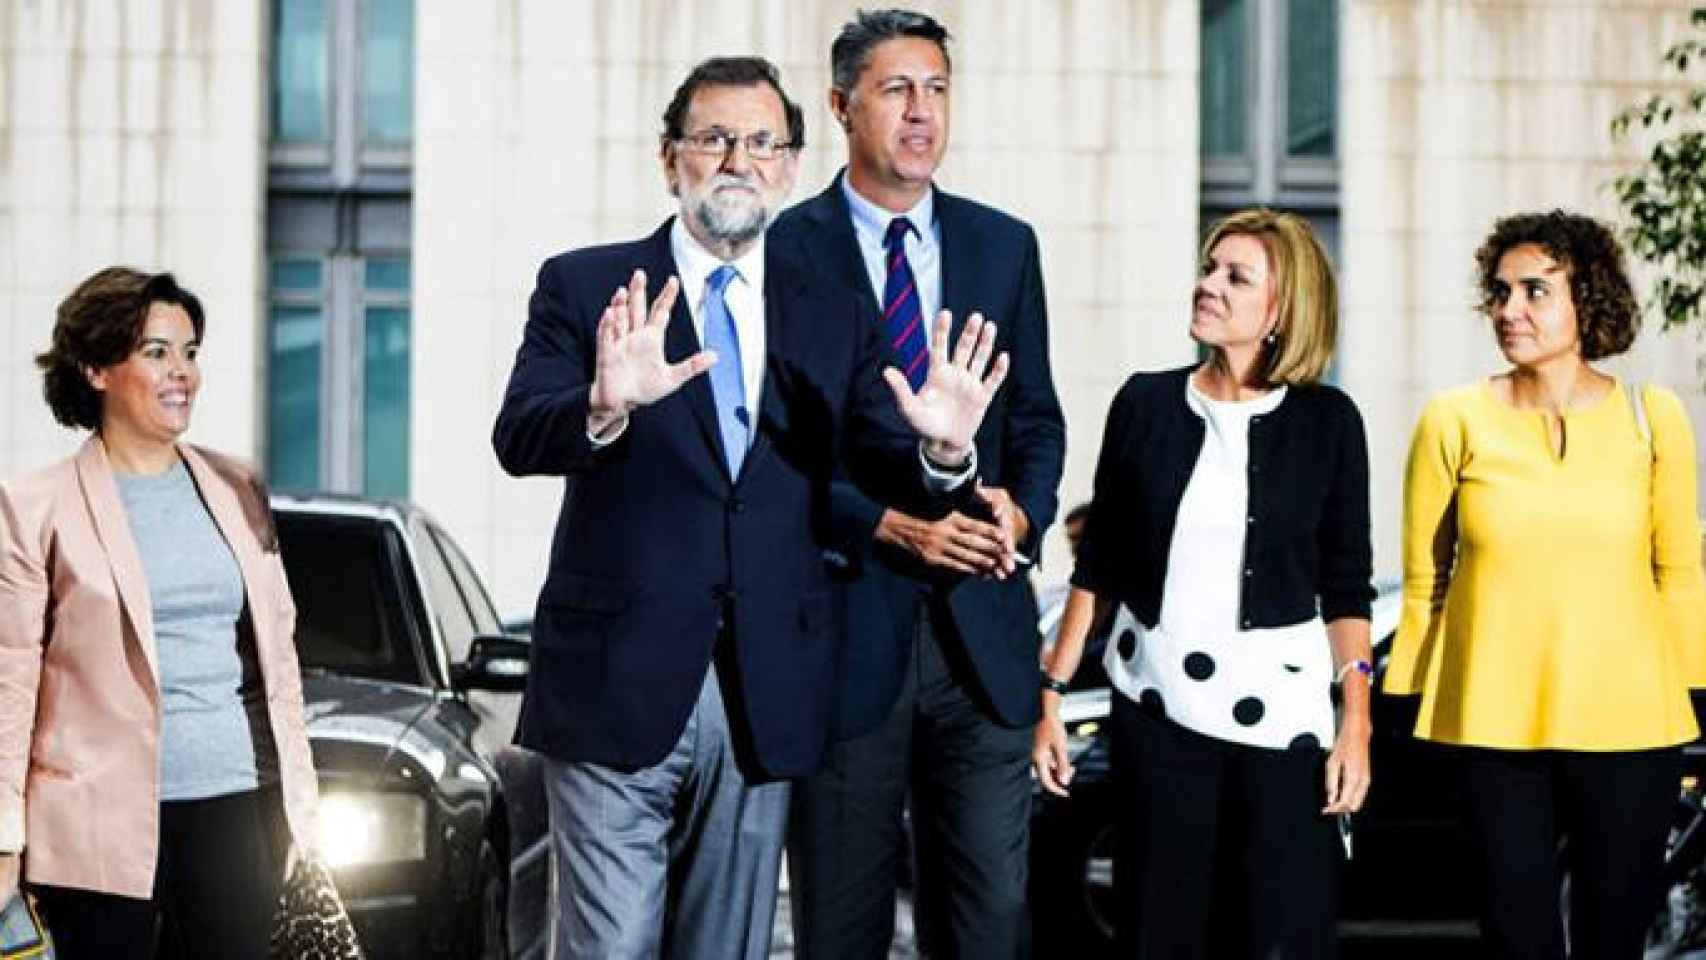 Soraya Sáenz de Santamaría, Mariano Rajoy, Xavier García Albiol, María Dolores de Cospedal y Dolors Montserrat (de izquierda a derecha), en un acto del PP catalán / EFE